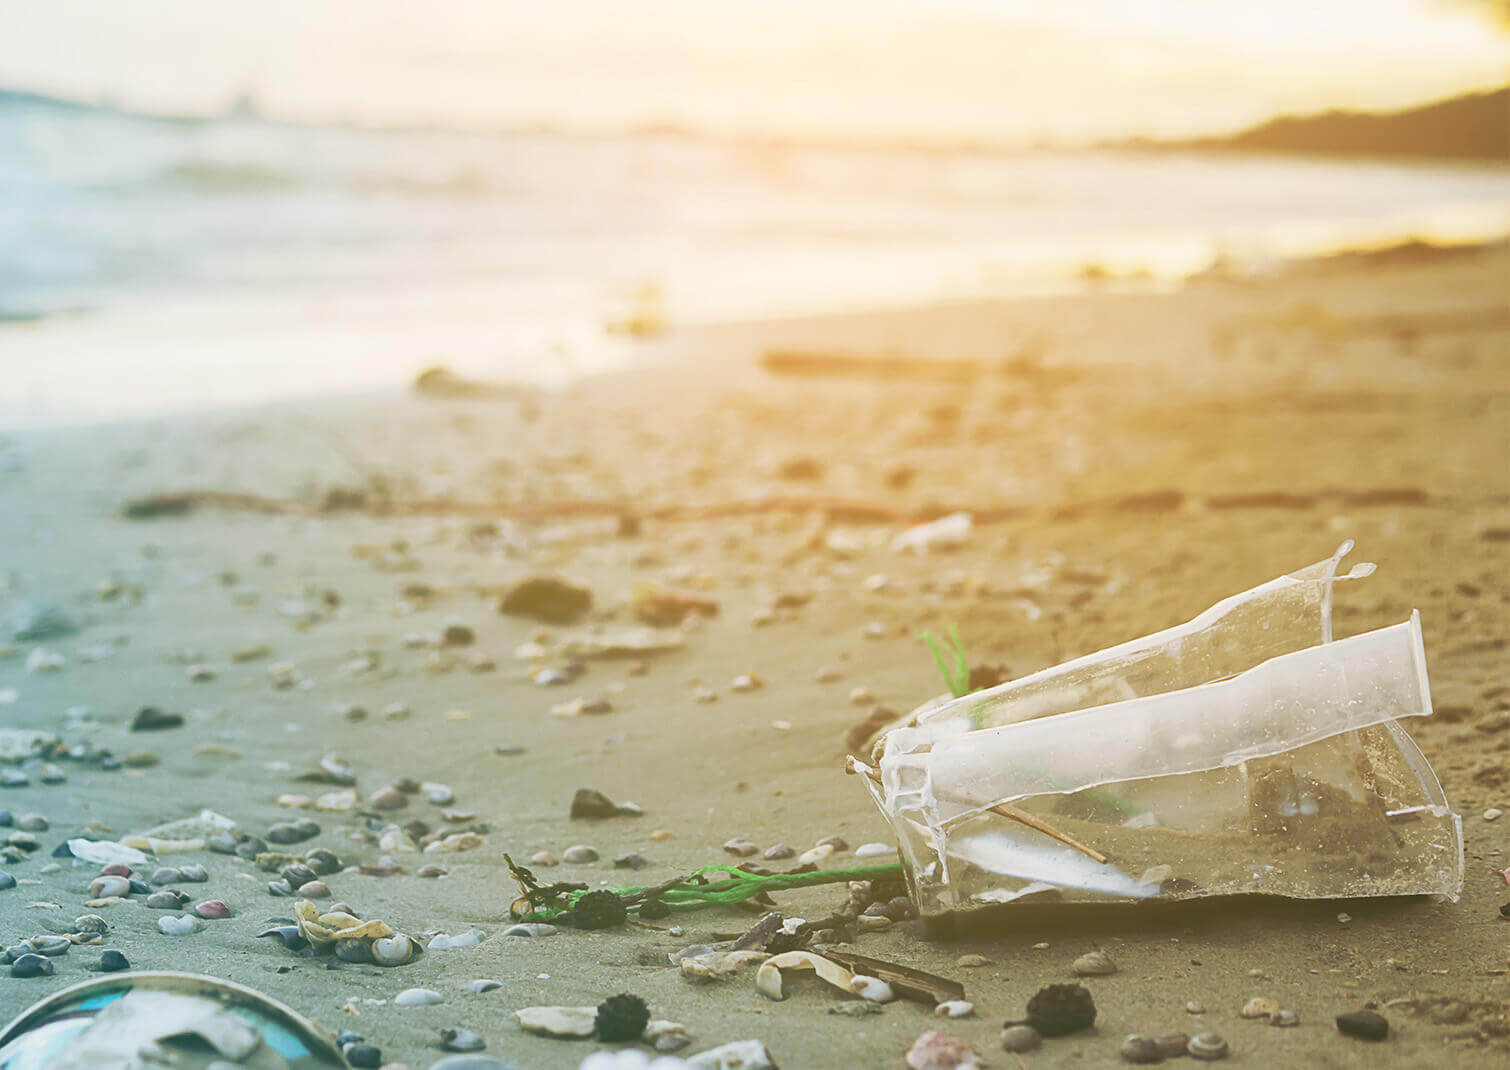 Beira mar ao por do sol com vários resíduos plásticos poluindo a paisagem, com destaque para uma garrafa plástica